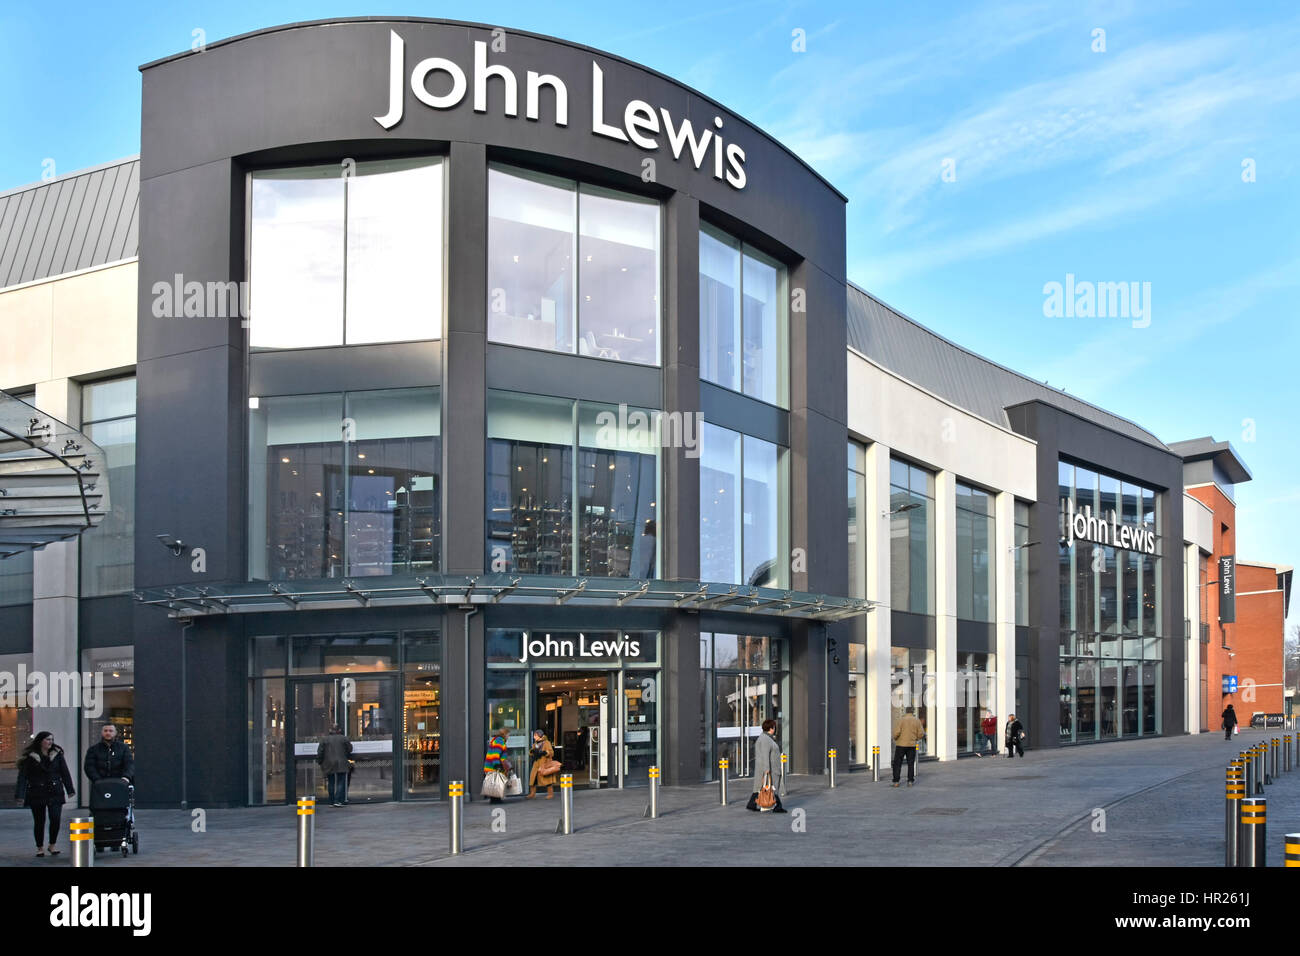 John Lewis Abteilung Speichern Eingang & Windows Chelmsford Essex England UK Teil 2016 Bond Street Shopping Center Entwicklung Winter Ansicht anzeigen Stockfoto